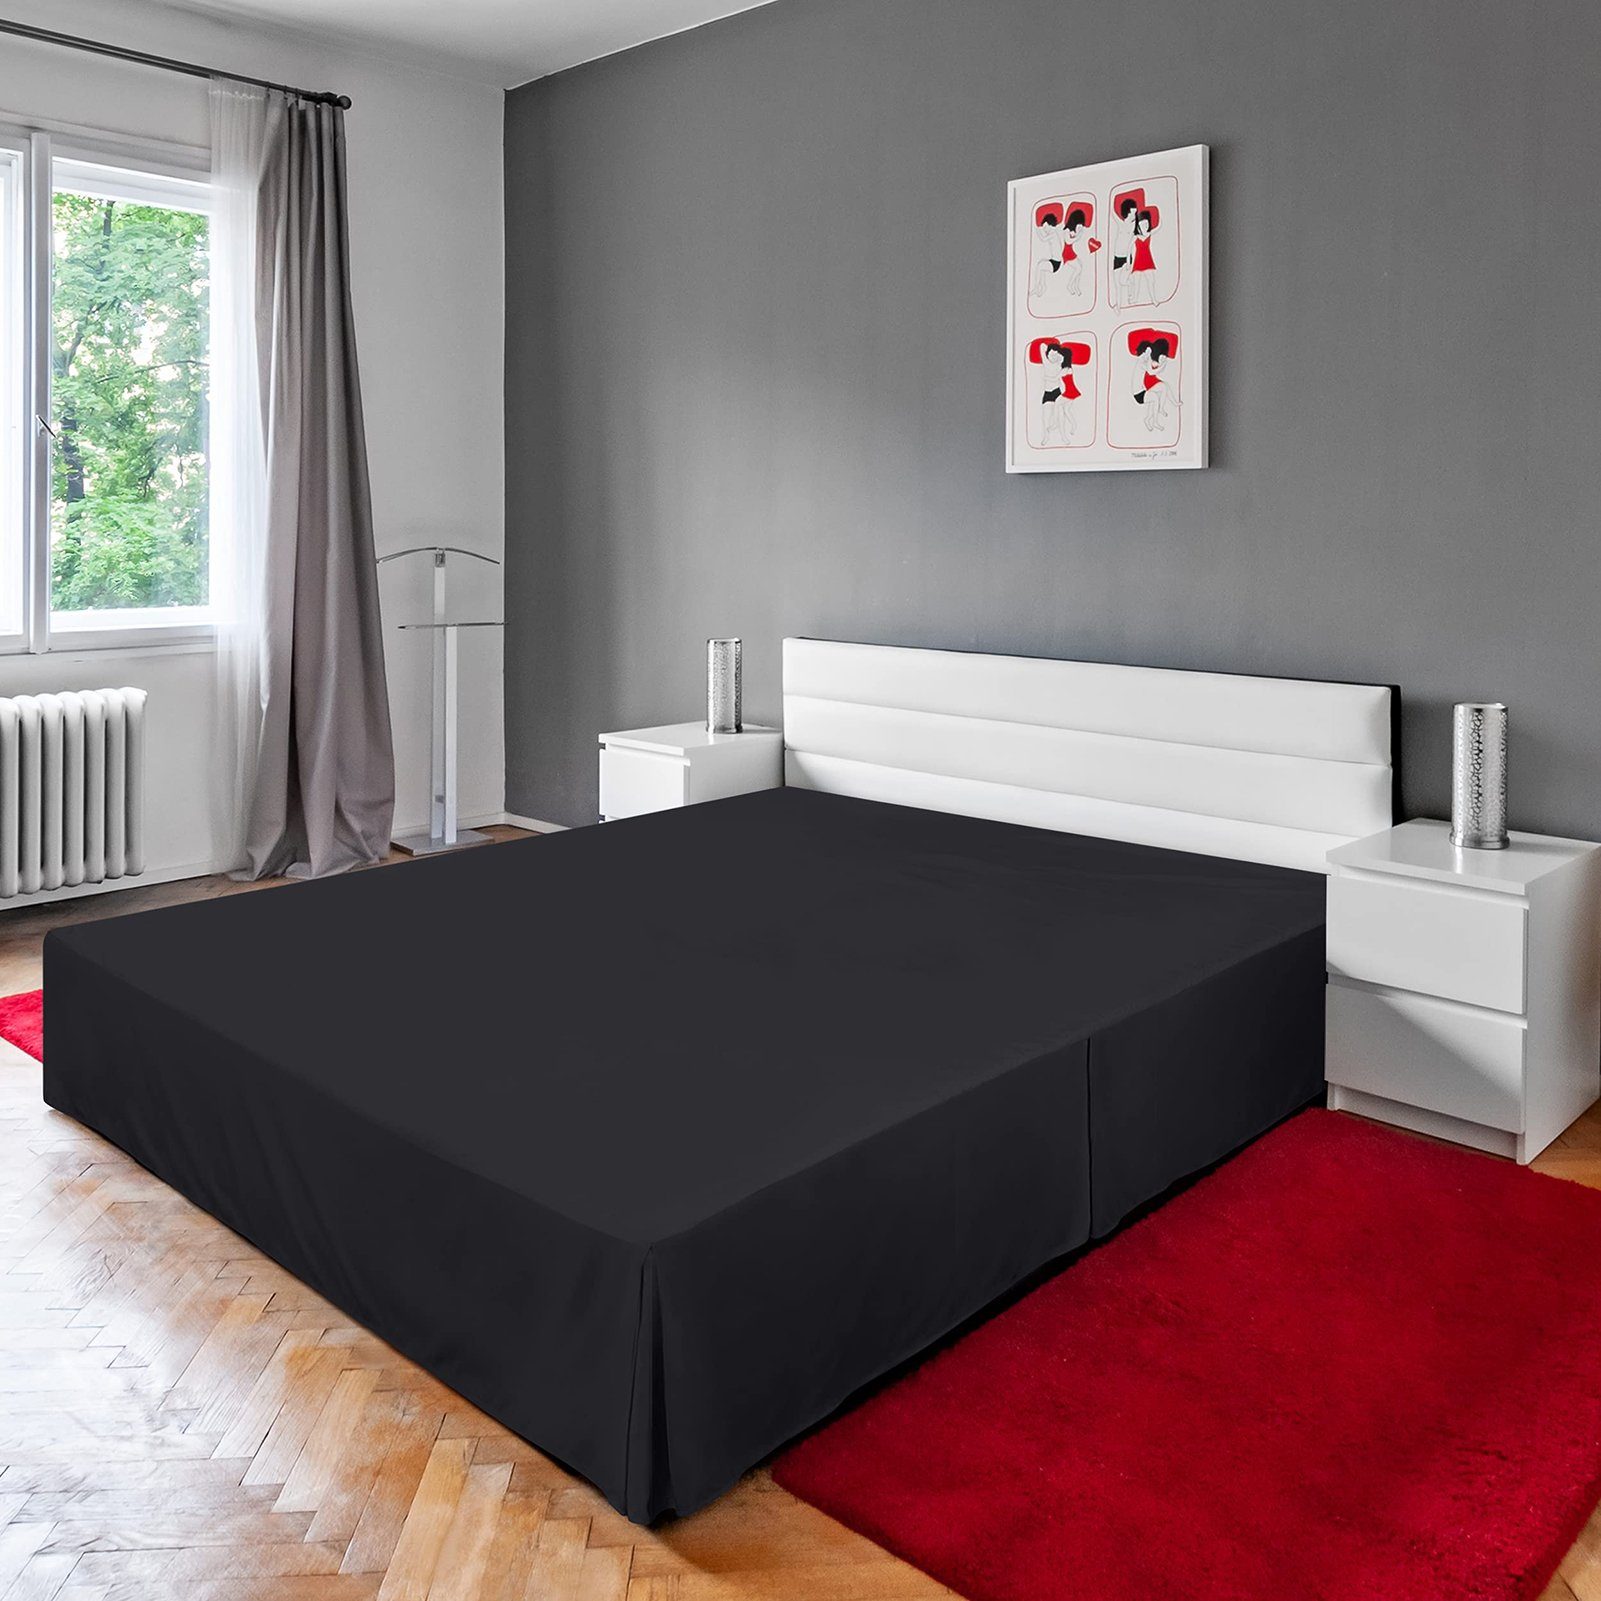 Tagesdecke Hotel-Bettrock Einfarbig Rutaqian, Bettkasten-Abdeckung, Einteilig Schürze im Stil Staubdicht Schwarz europäischen Tagesdecke